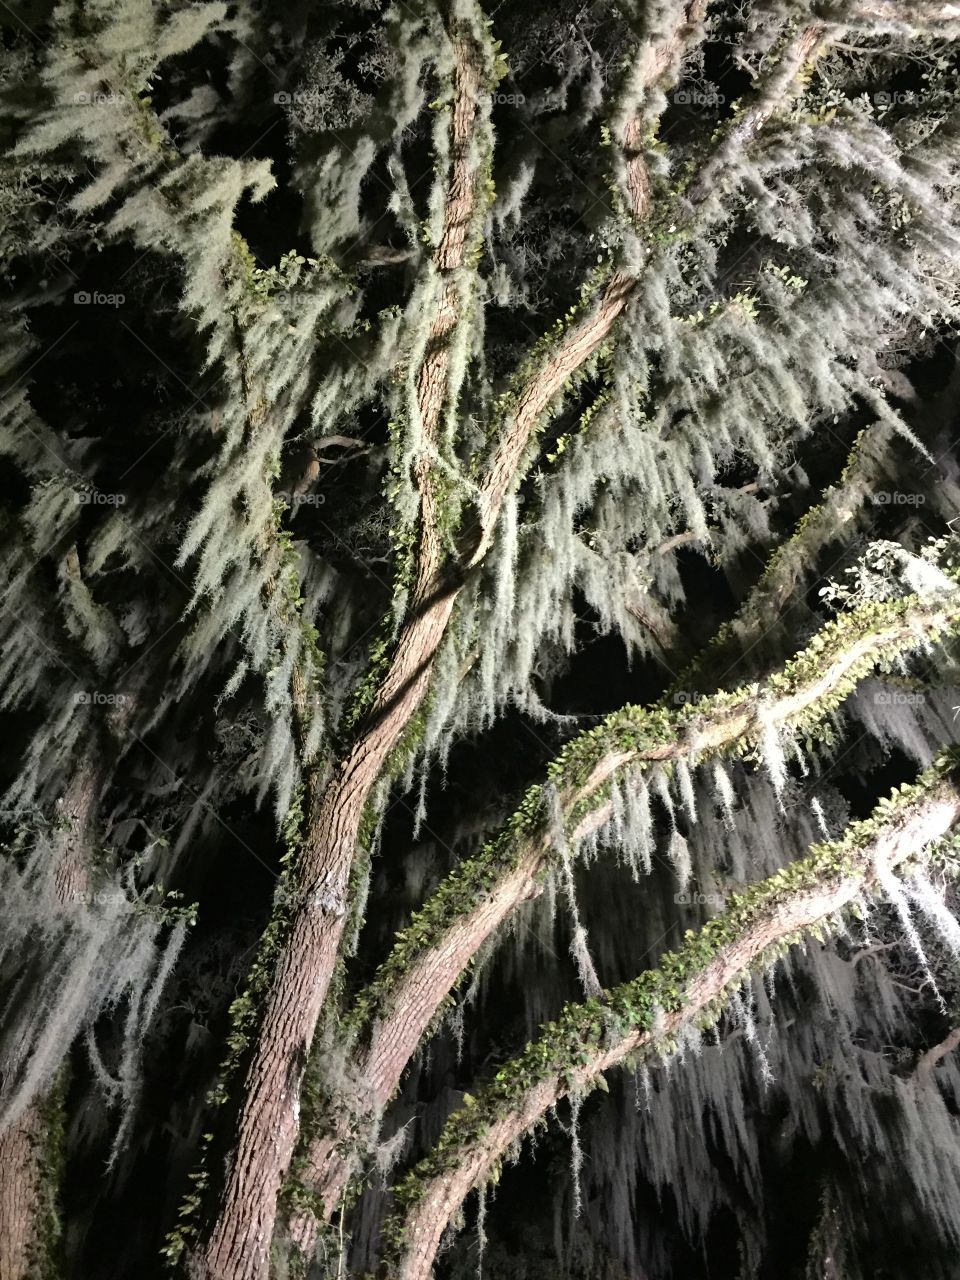 Moss hanging in Live Oak Tree 